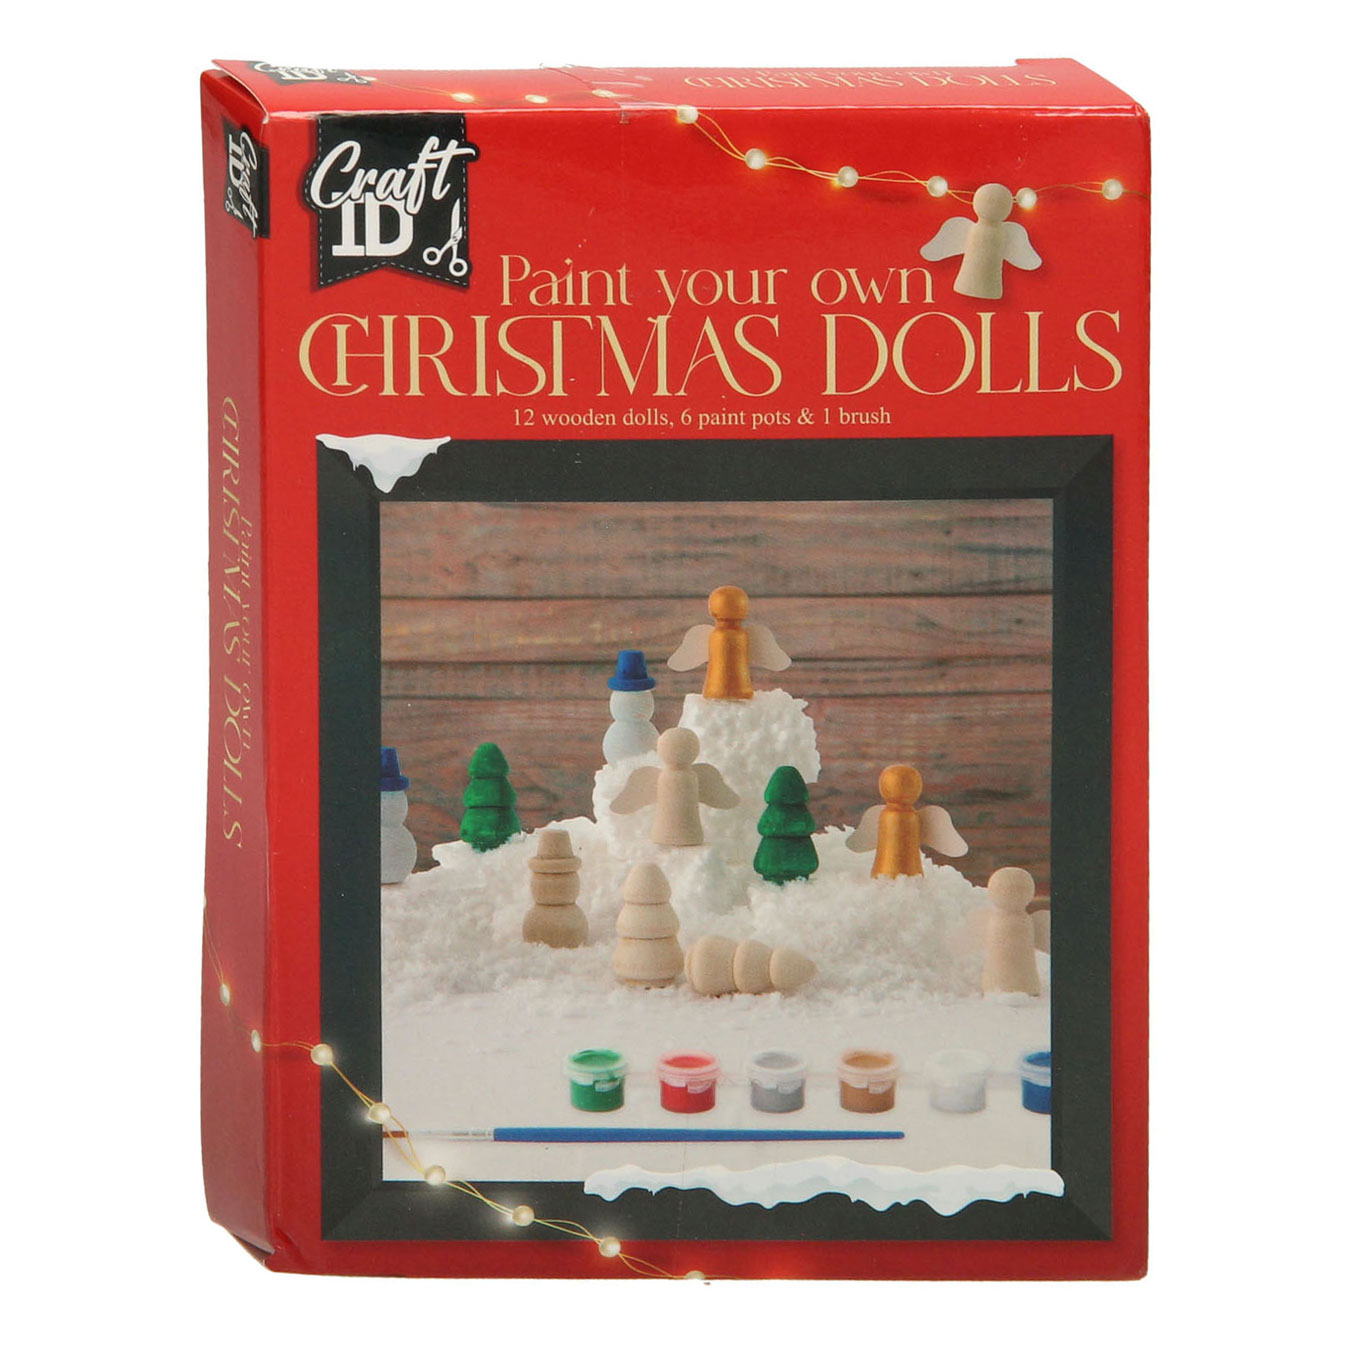 Peignez vos propres figurines de Noël en bois, 12 pièces.